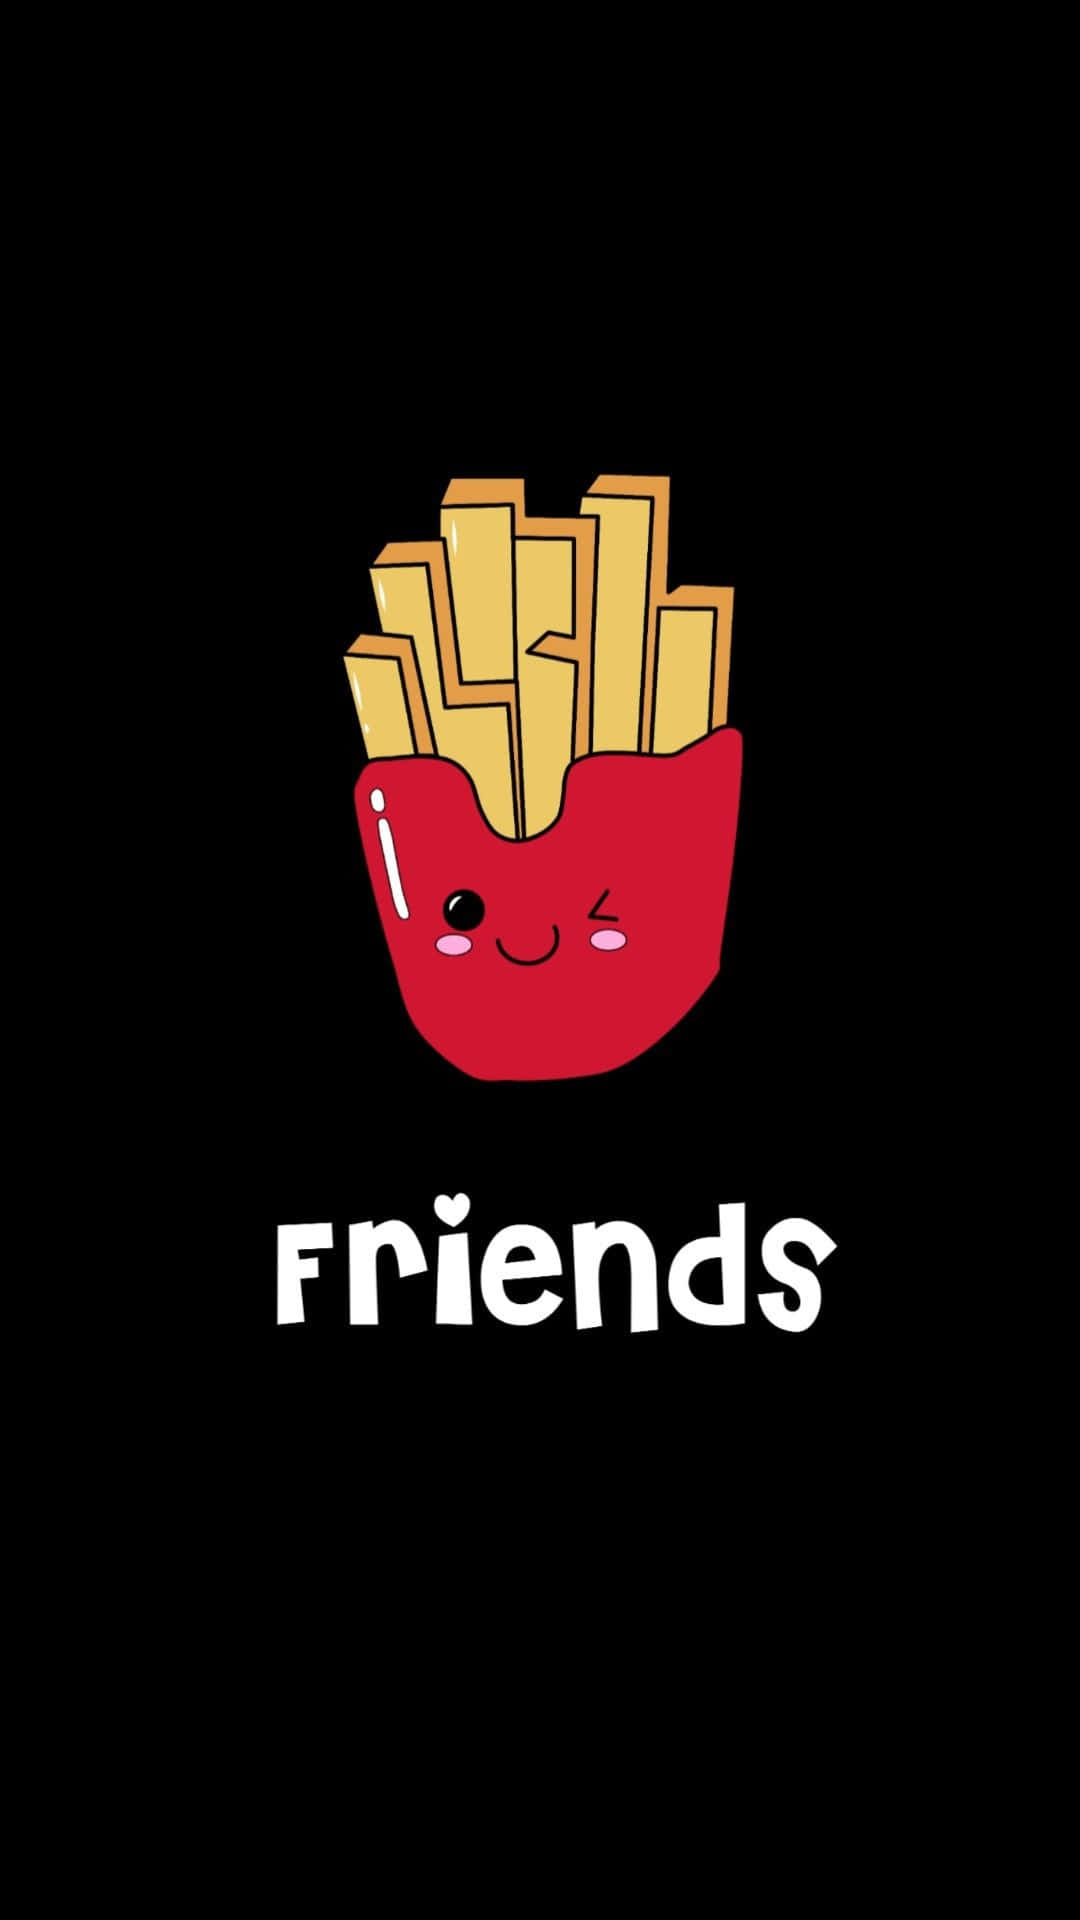 Vær venner- et sødt tegneserie billede af pomfritter Wallpaper